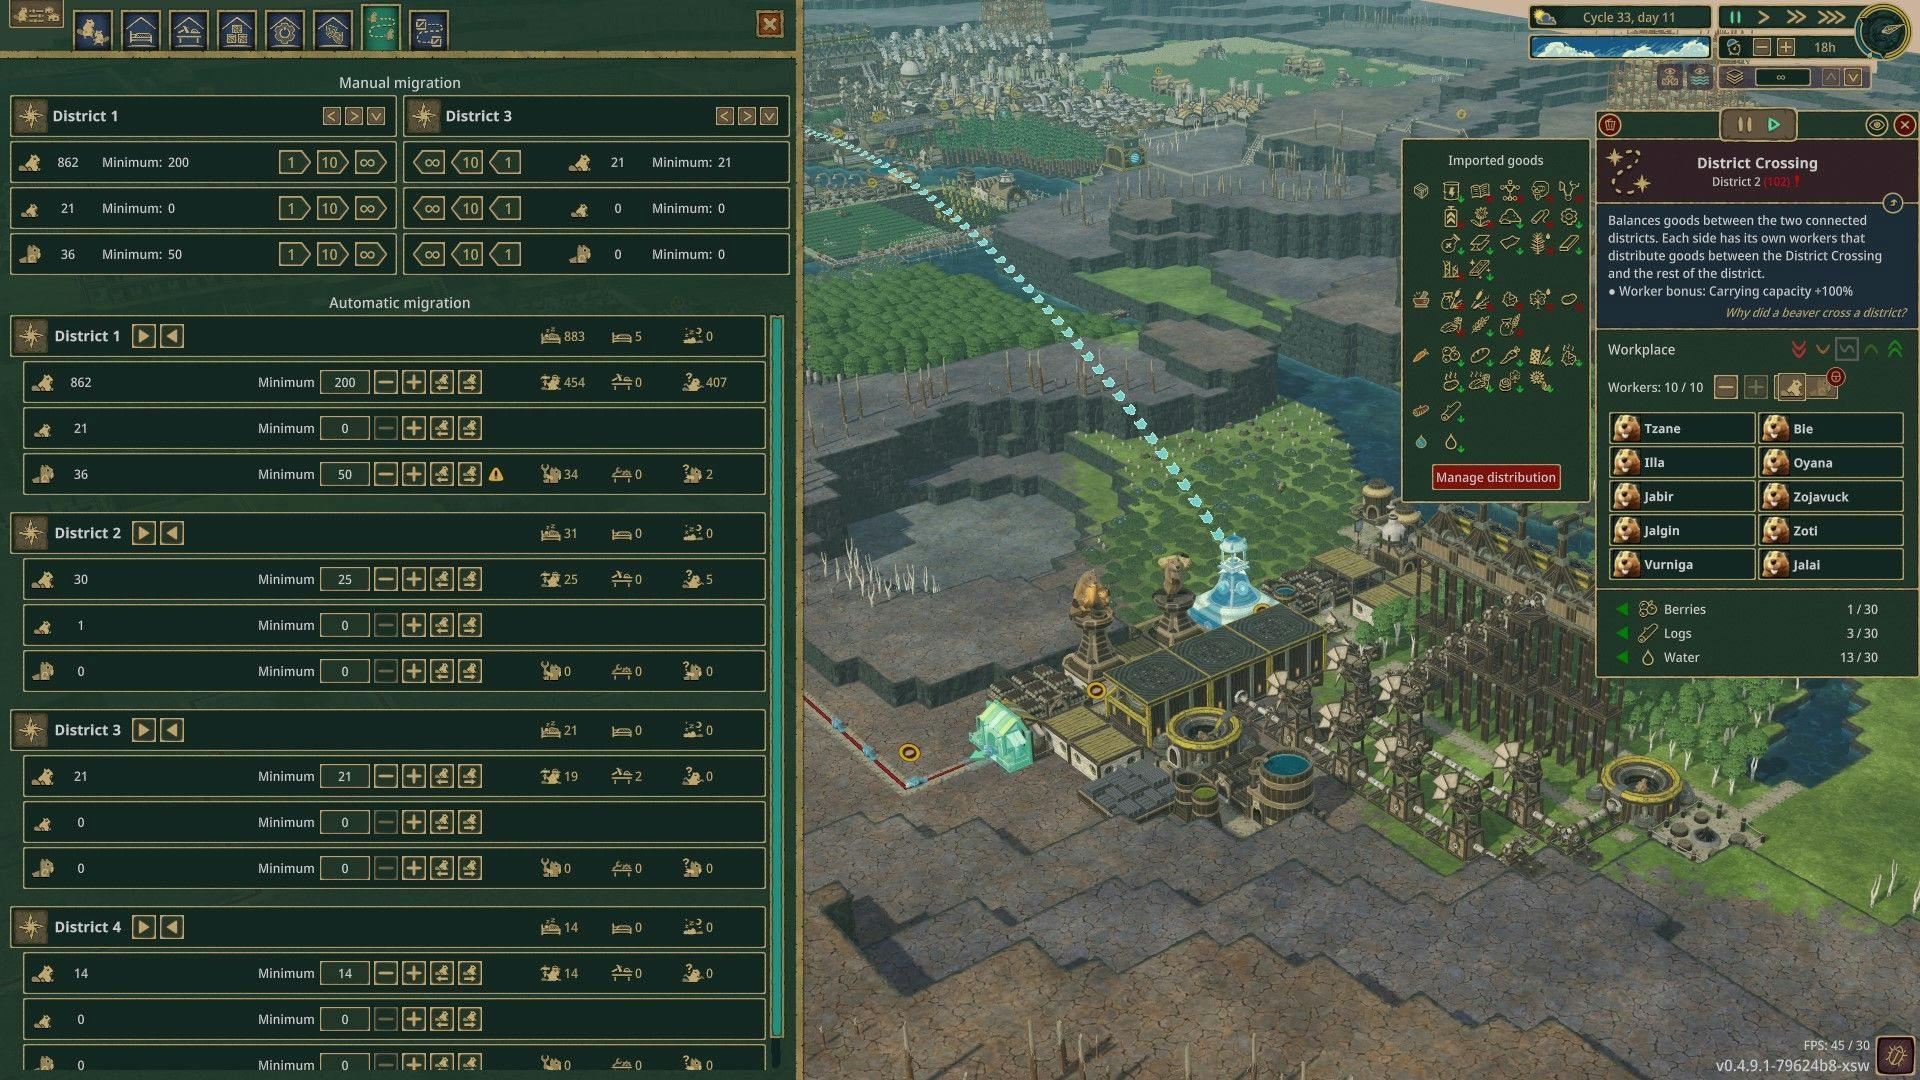 Interface de usuário Timberborn com muitas janelas e controles no jogo